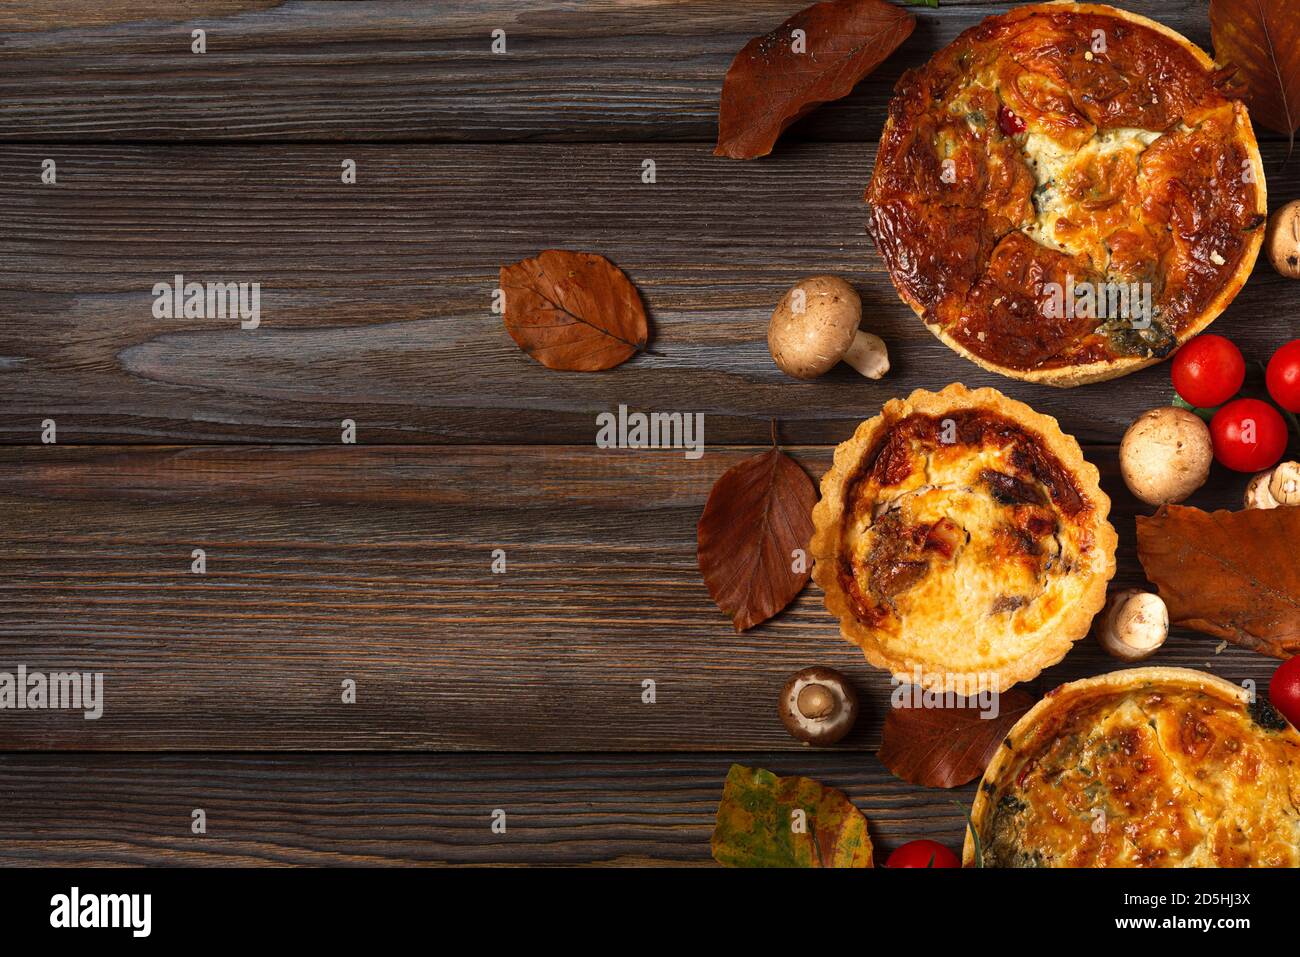 Quiche de pâtisserie maison lorraine aux épinards, aux champignons, aux tomates et au fromage sur une table en bois avec feuilles d'automne. Vue sur le dessus avec espace copie Banque D'Images